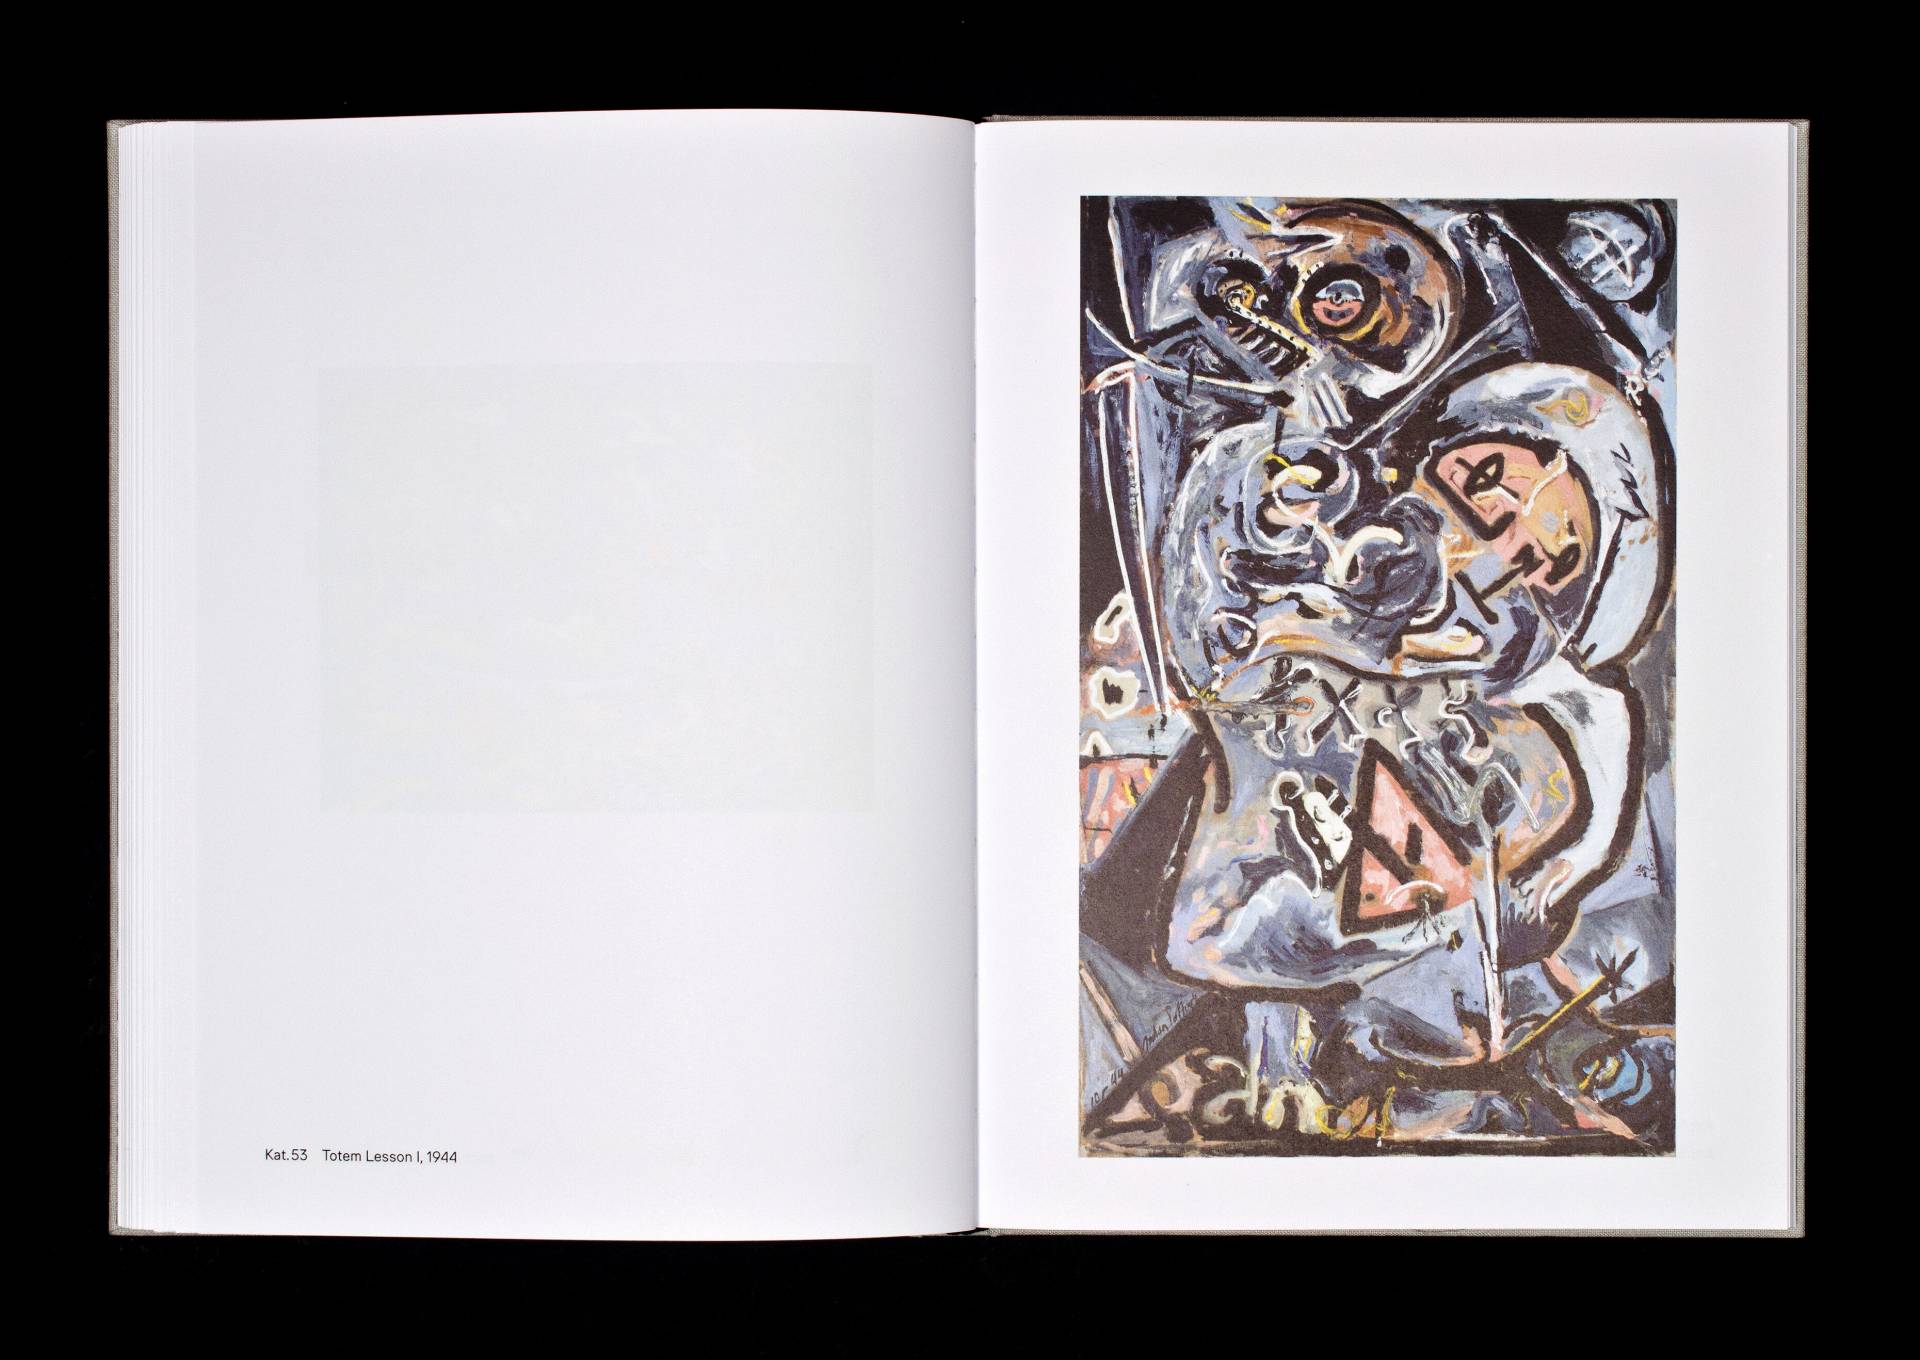 Katalog zur Ausstellung »Der figurative Pollock« für das Kunstmuseum Basel